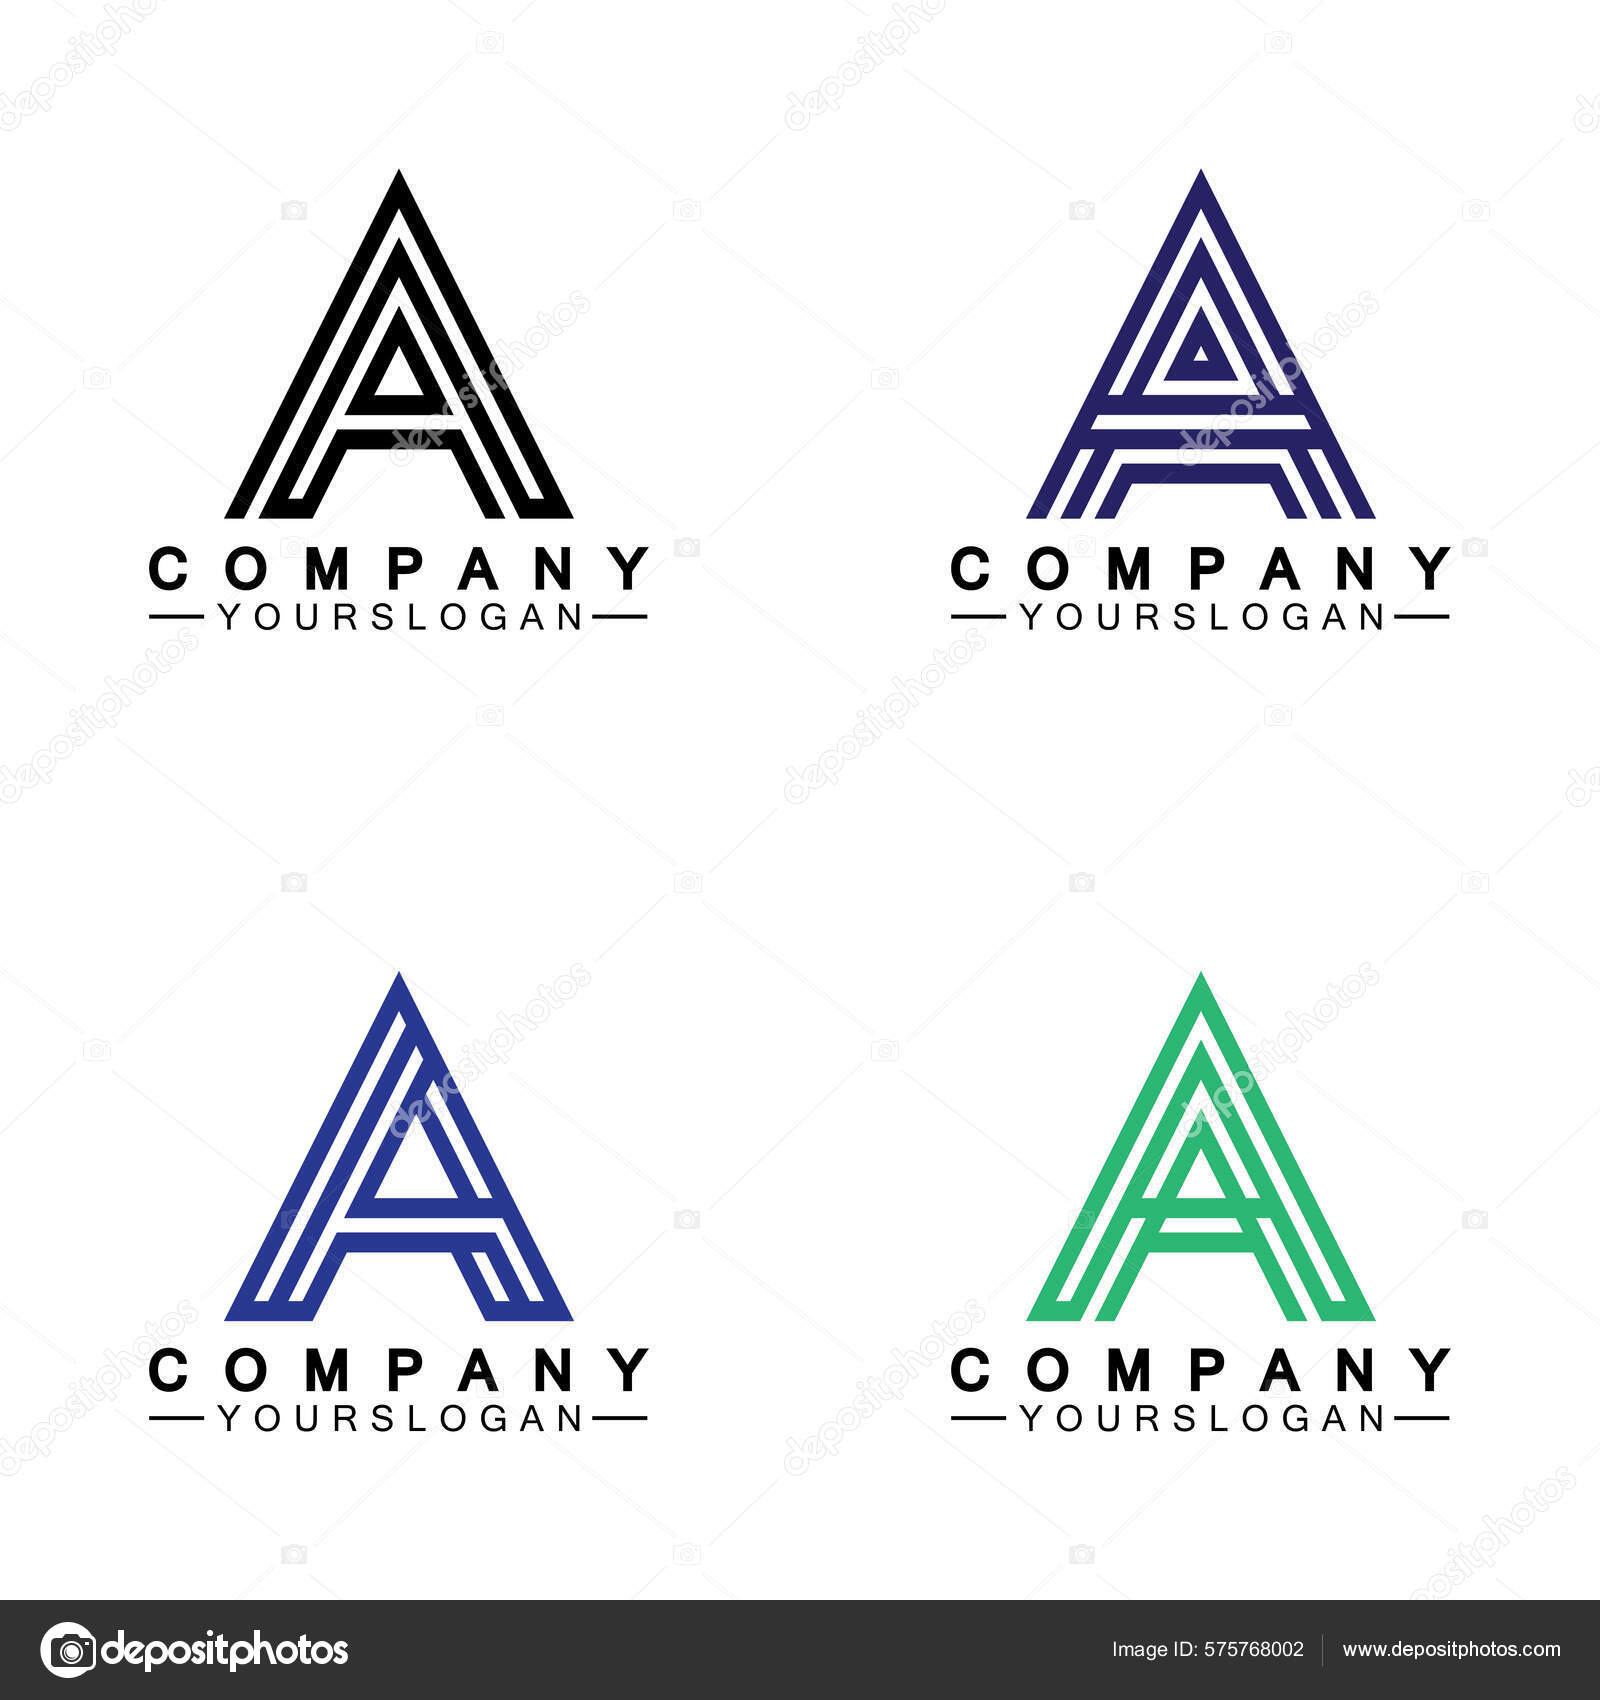 AA monogram  Monogram logo design, Letter logo design, Branding